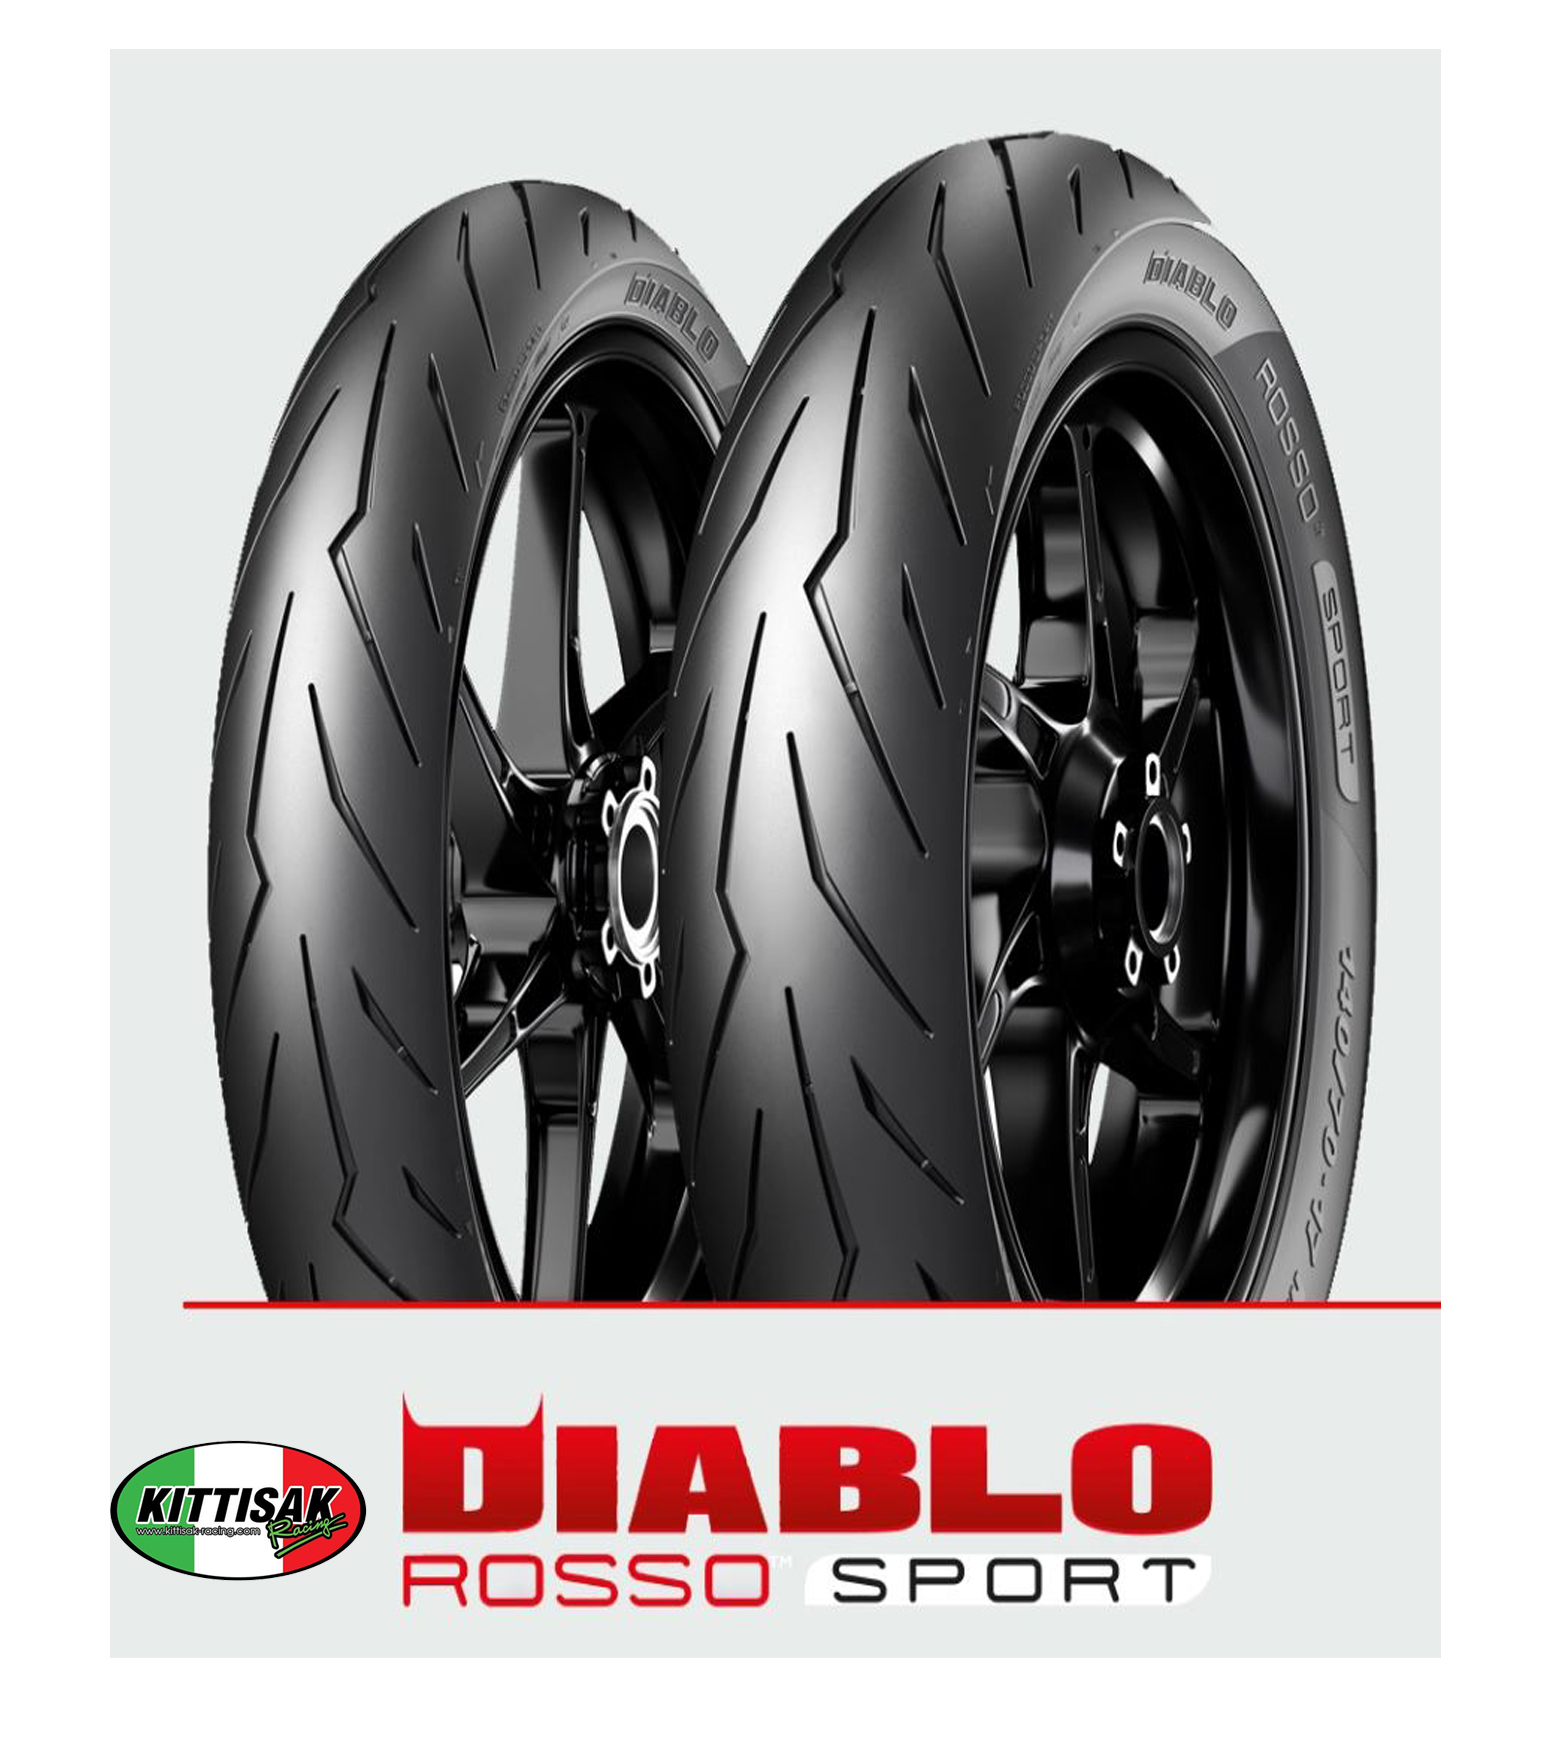 ยาง Pirelli Diablo Rosso Sport